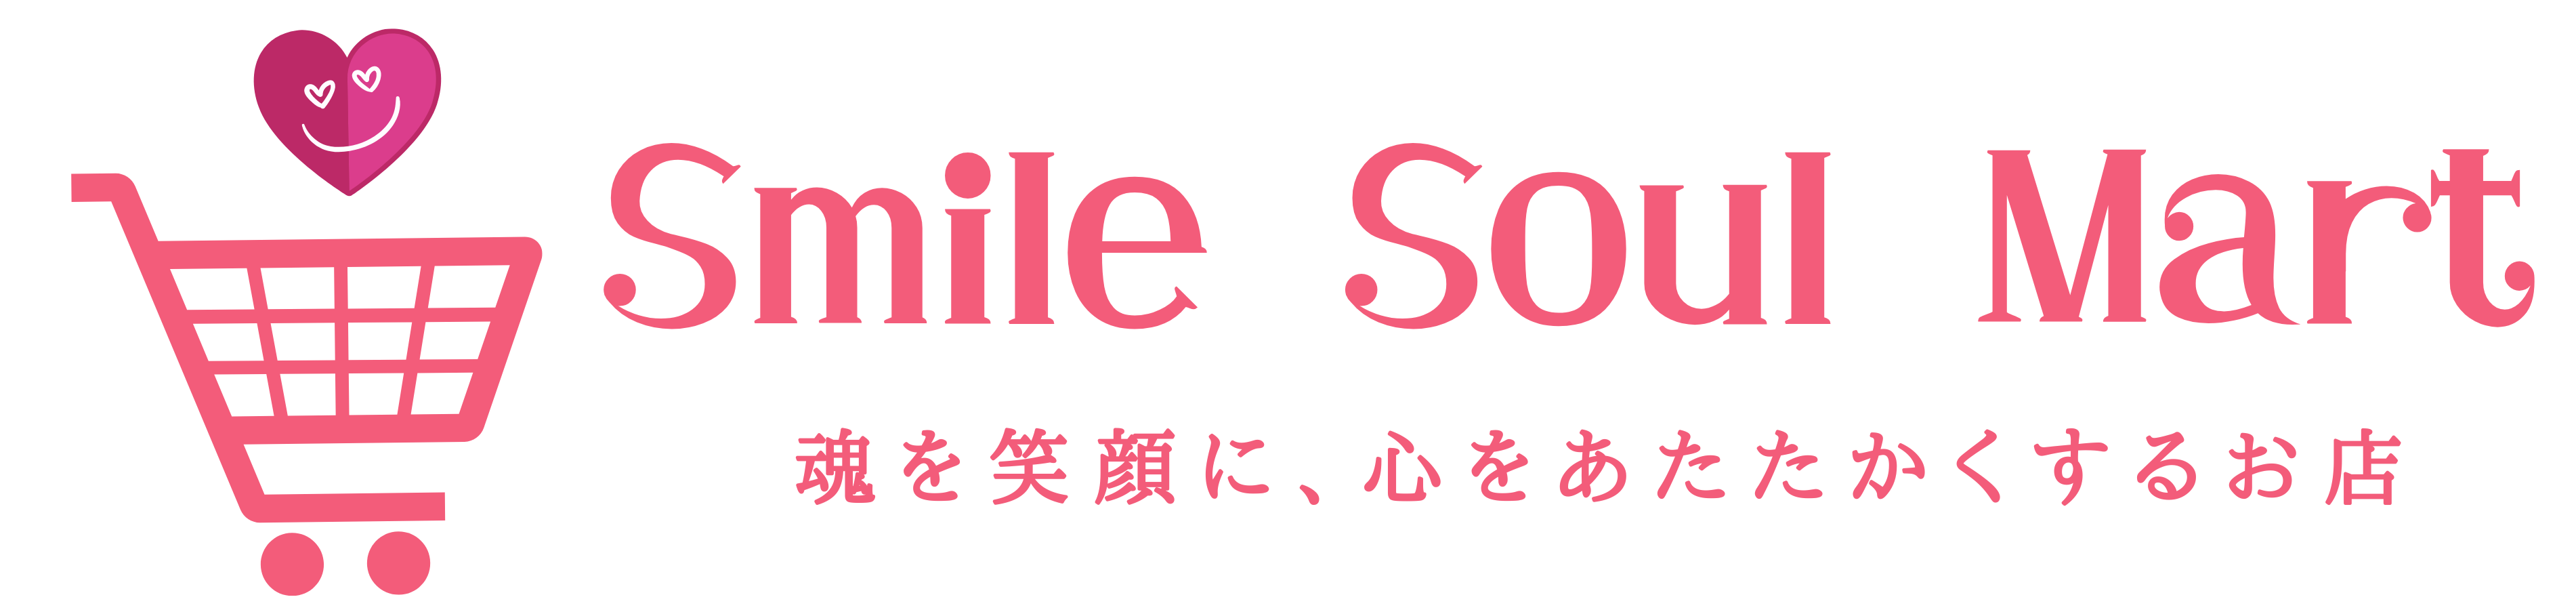 Smile-Soul-Mart